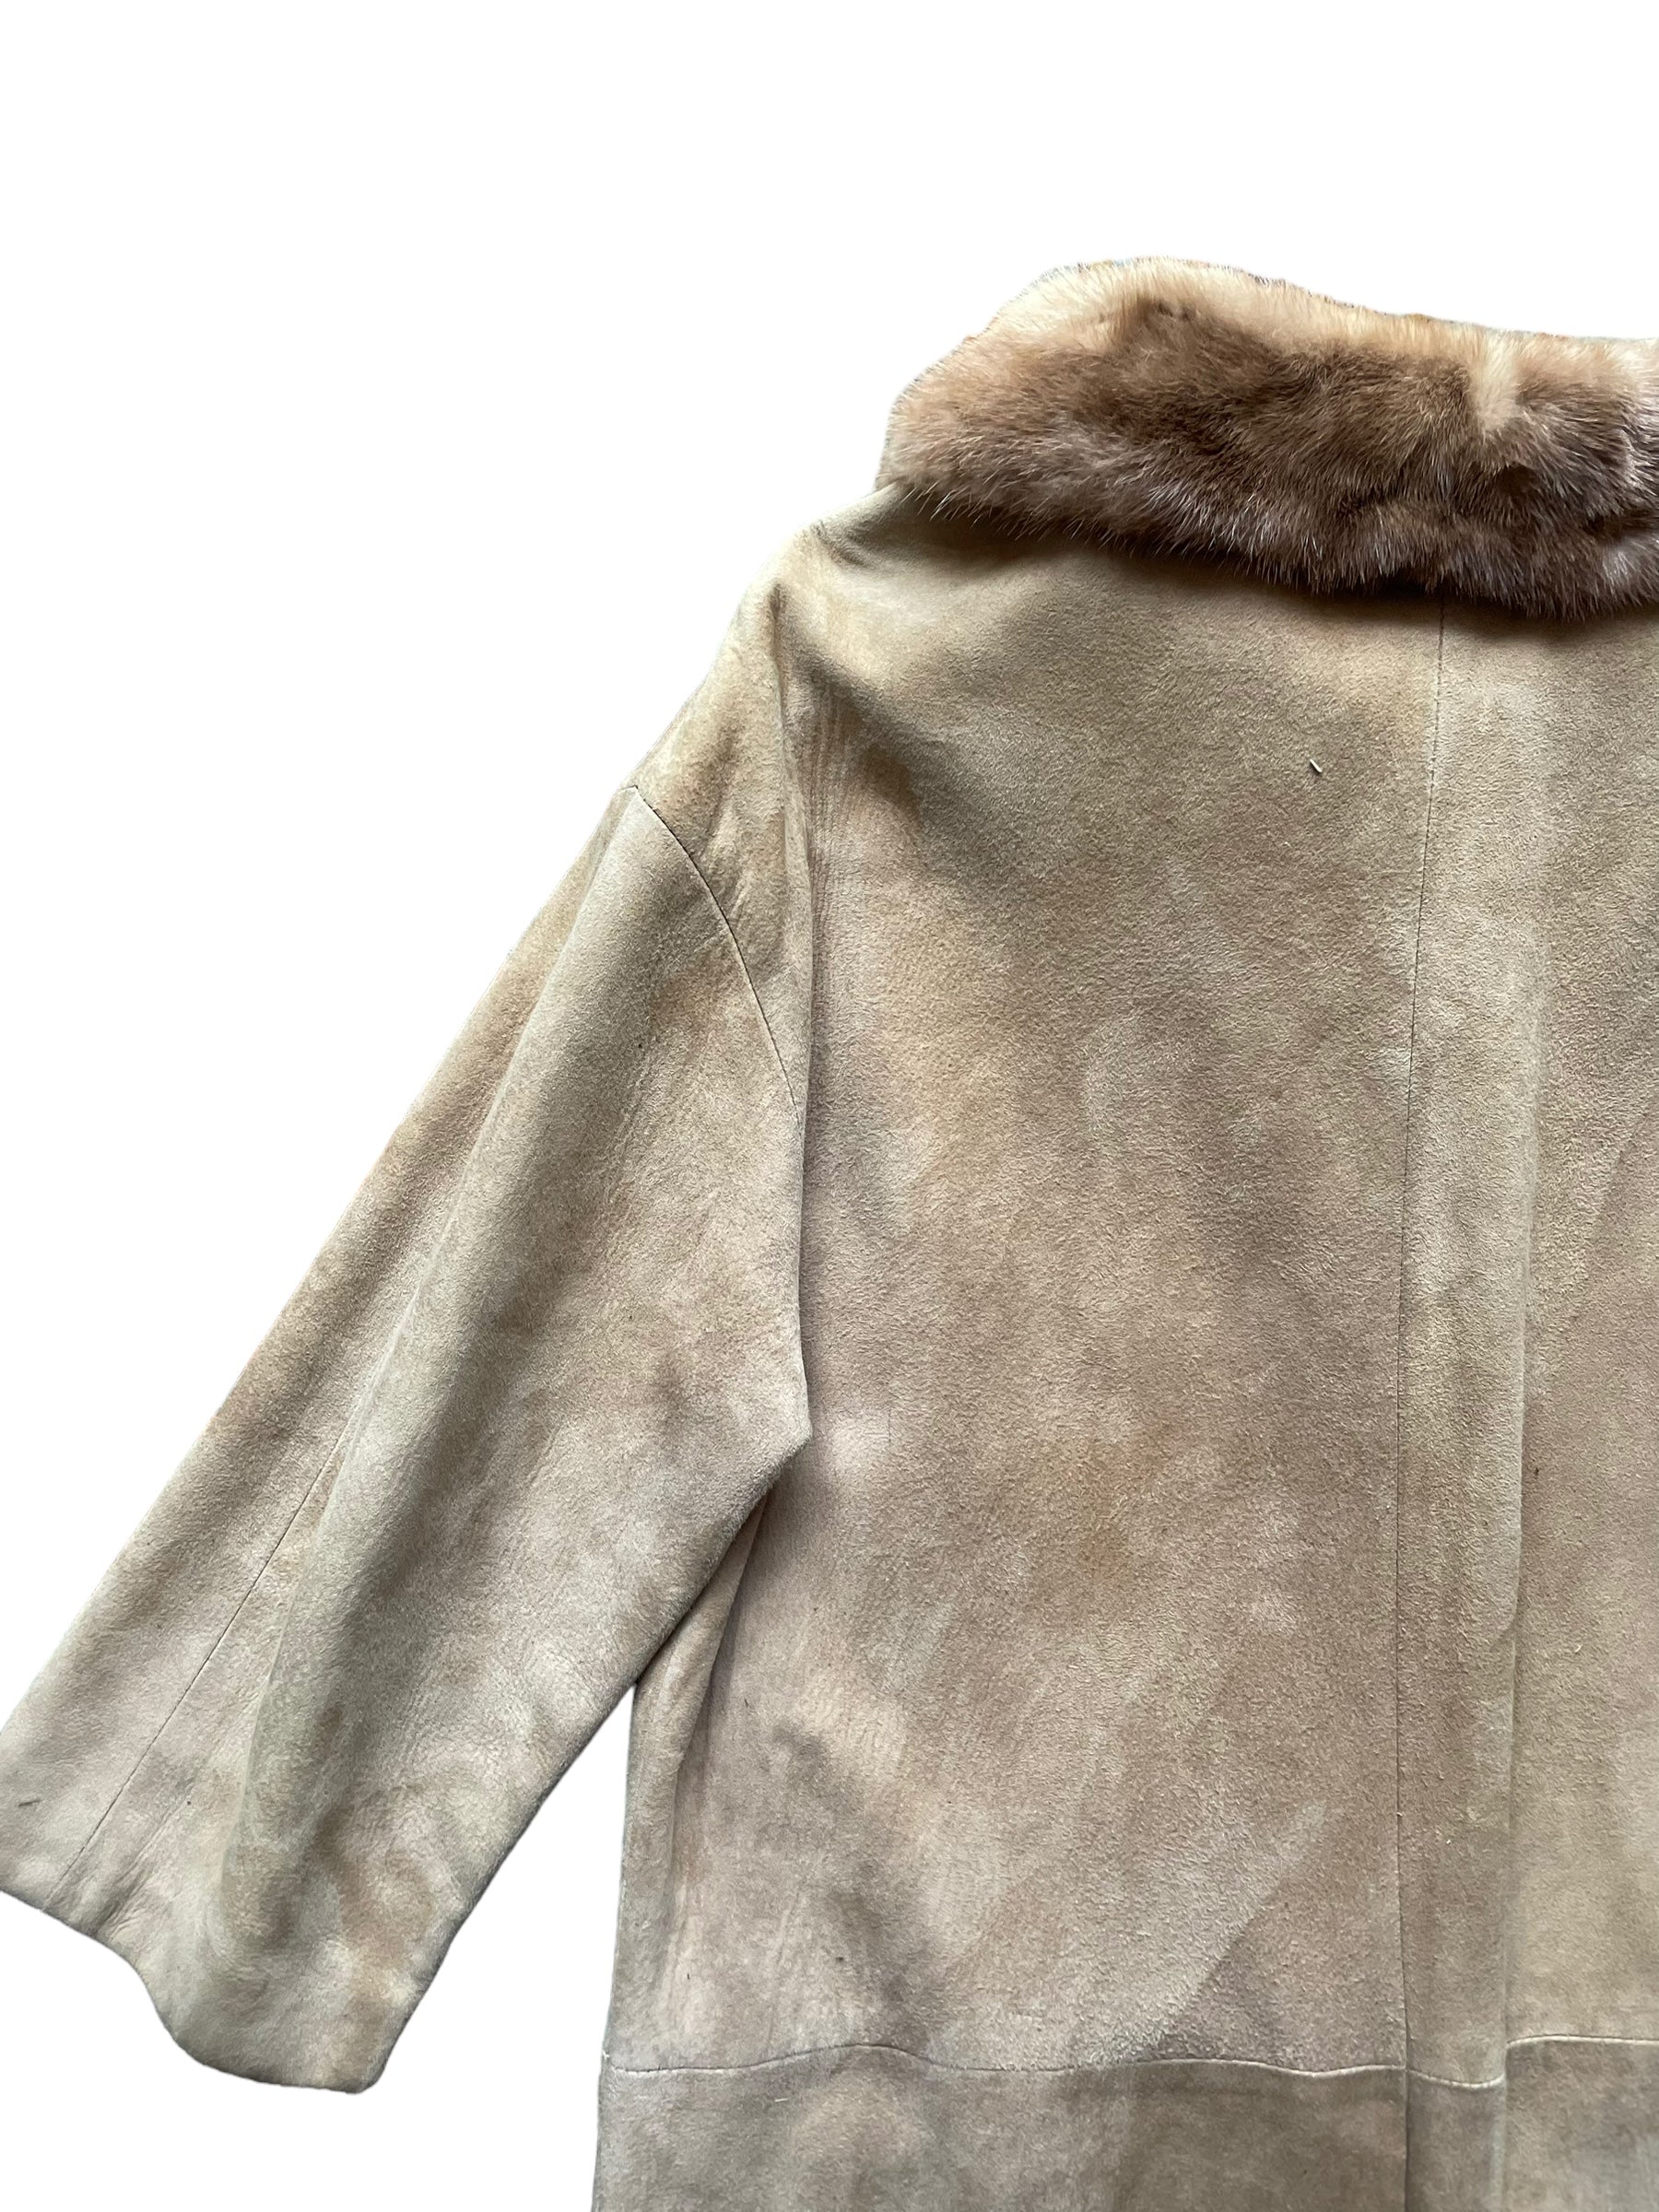 Back left shoulder view of Vintage 1960s Suede Coat with Mink Collar SZ M-L | Seattle True Vintage | Barn Owl Vintage Coats